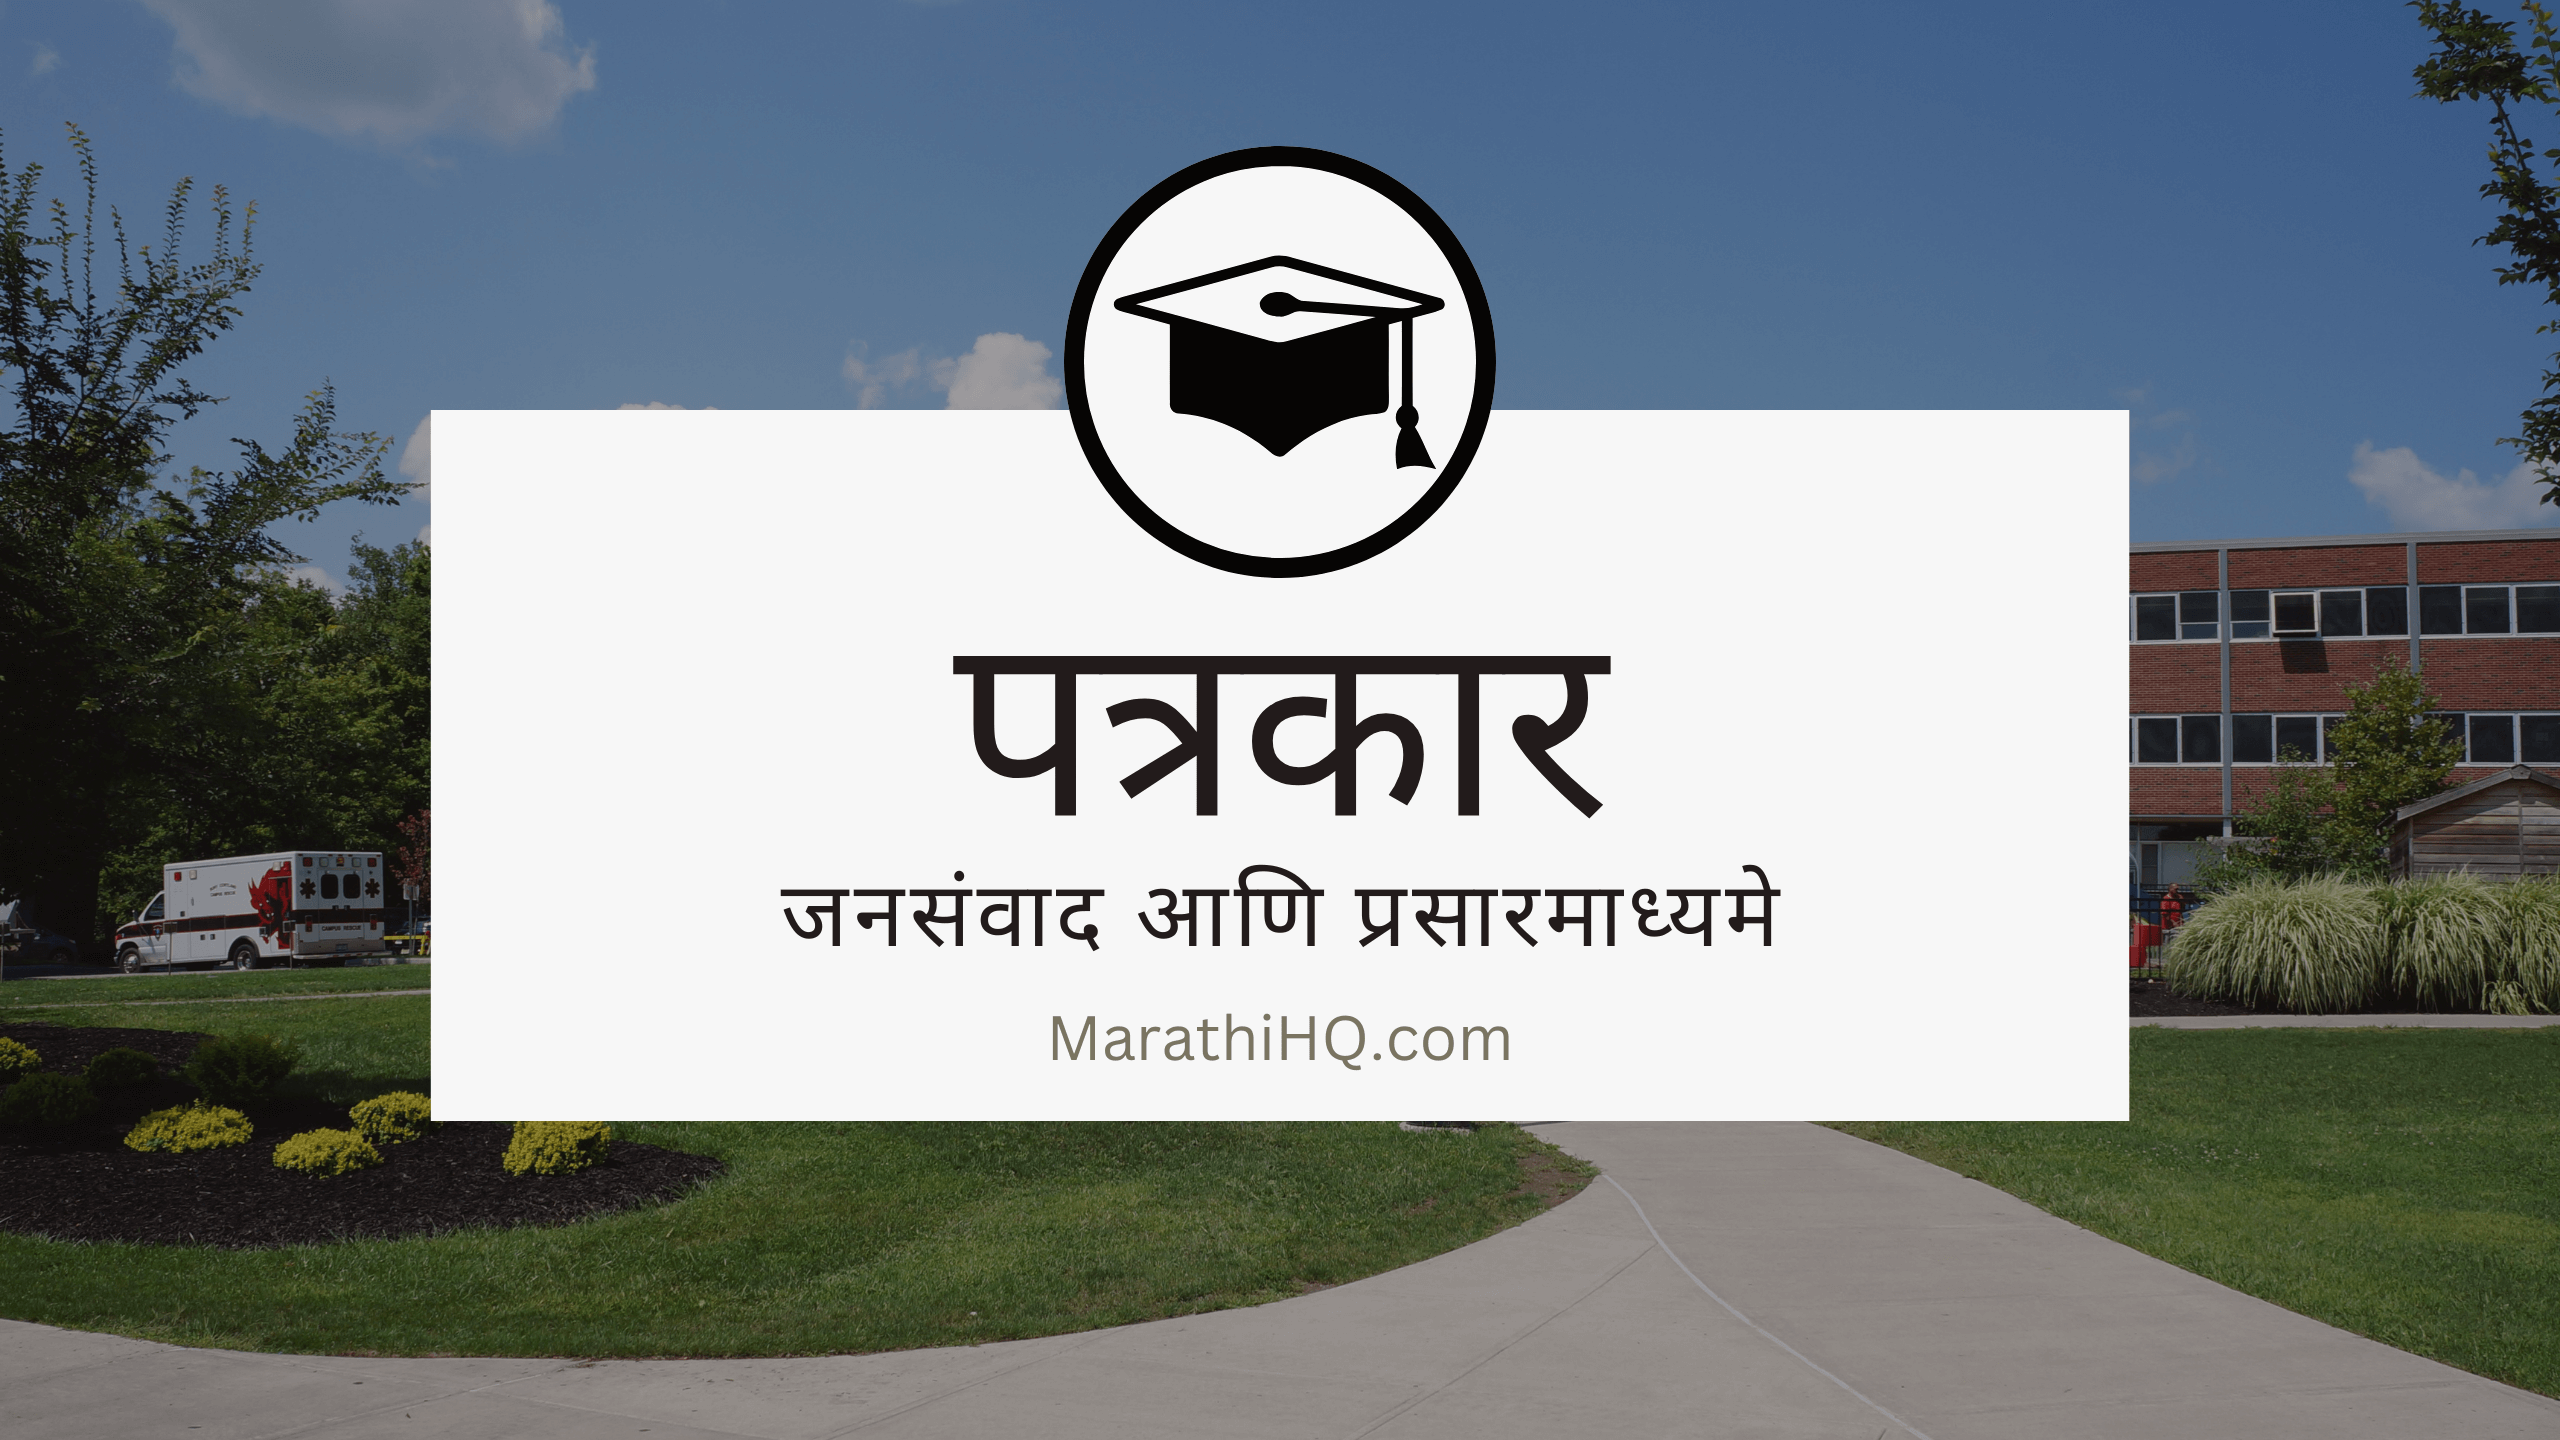 कसं व्हायचं पत्रकार || काय असत हे मास कम्युनिकेशन आणि मीडिया || Mass Communication and media full course information in Marathi